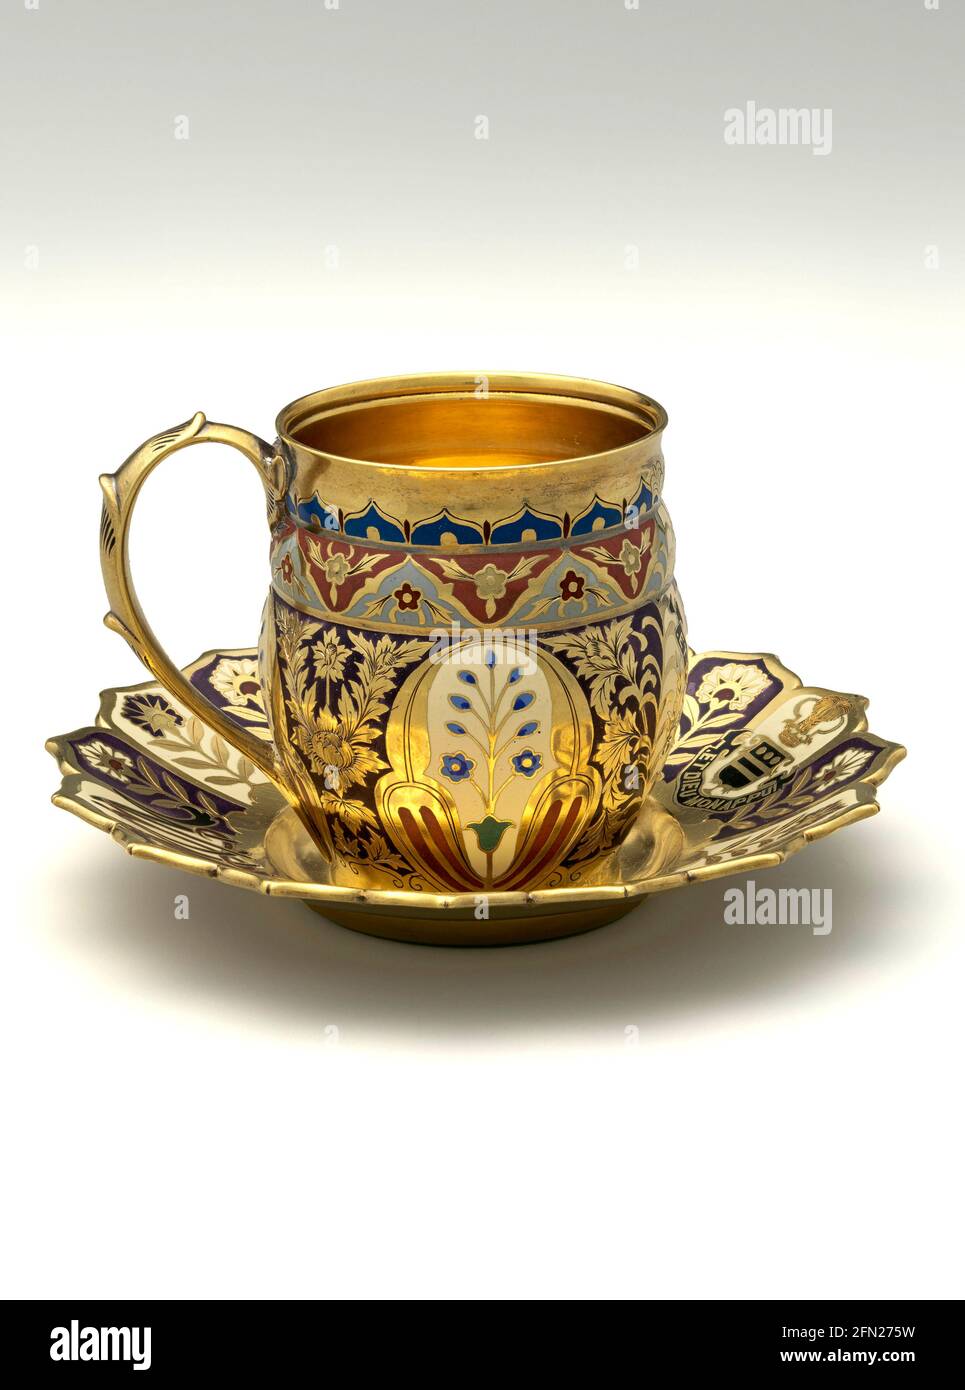 Tasse - vom Mackay Service 1878 von Tiffany & Co. Diese vergoldeten und emaillierten Tassen und Untertassen gehören zu einem der renommiertesten und luxuriösesten Dinner-Services, die jemals in Amerika kreiert wurden Stockfoto